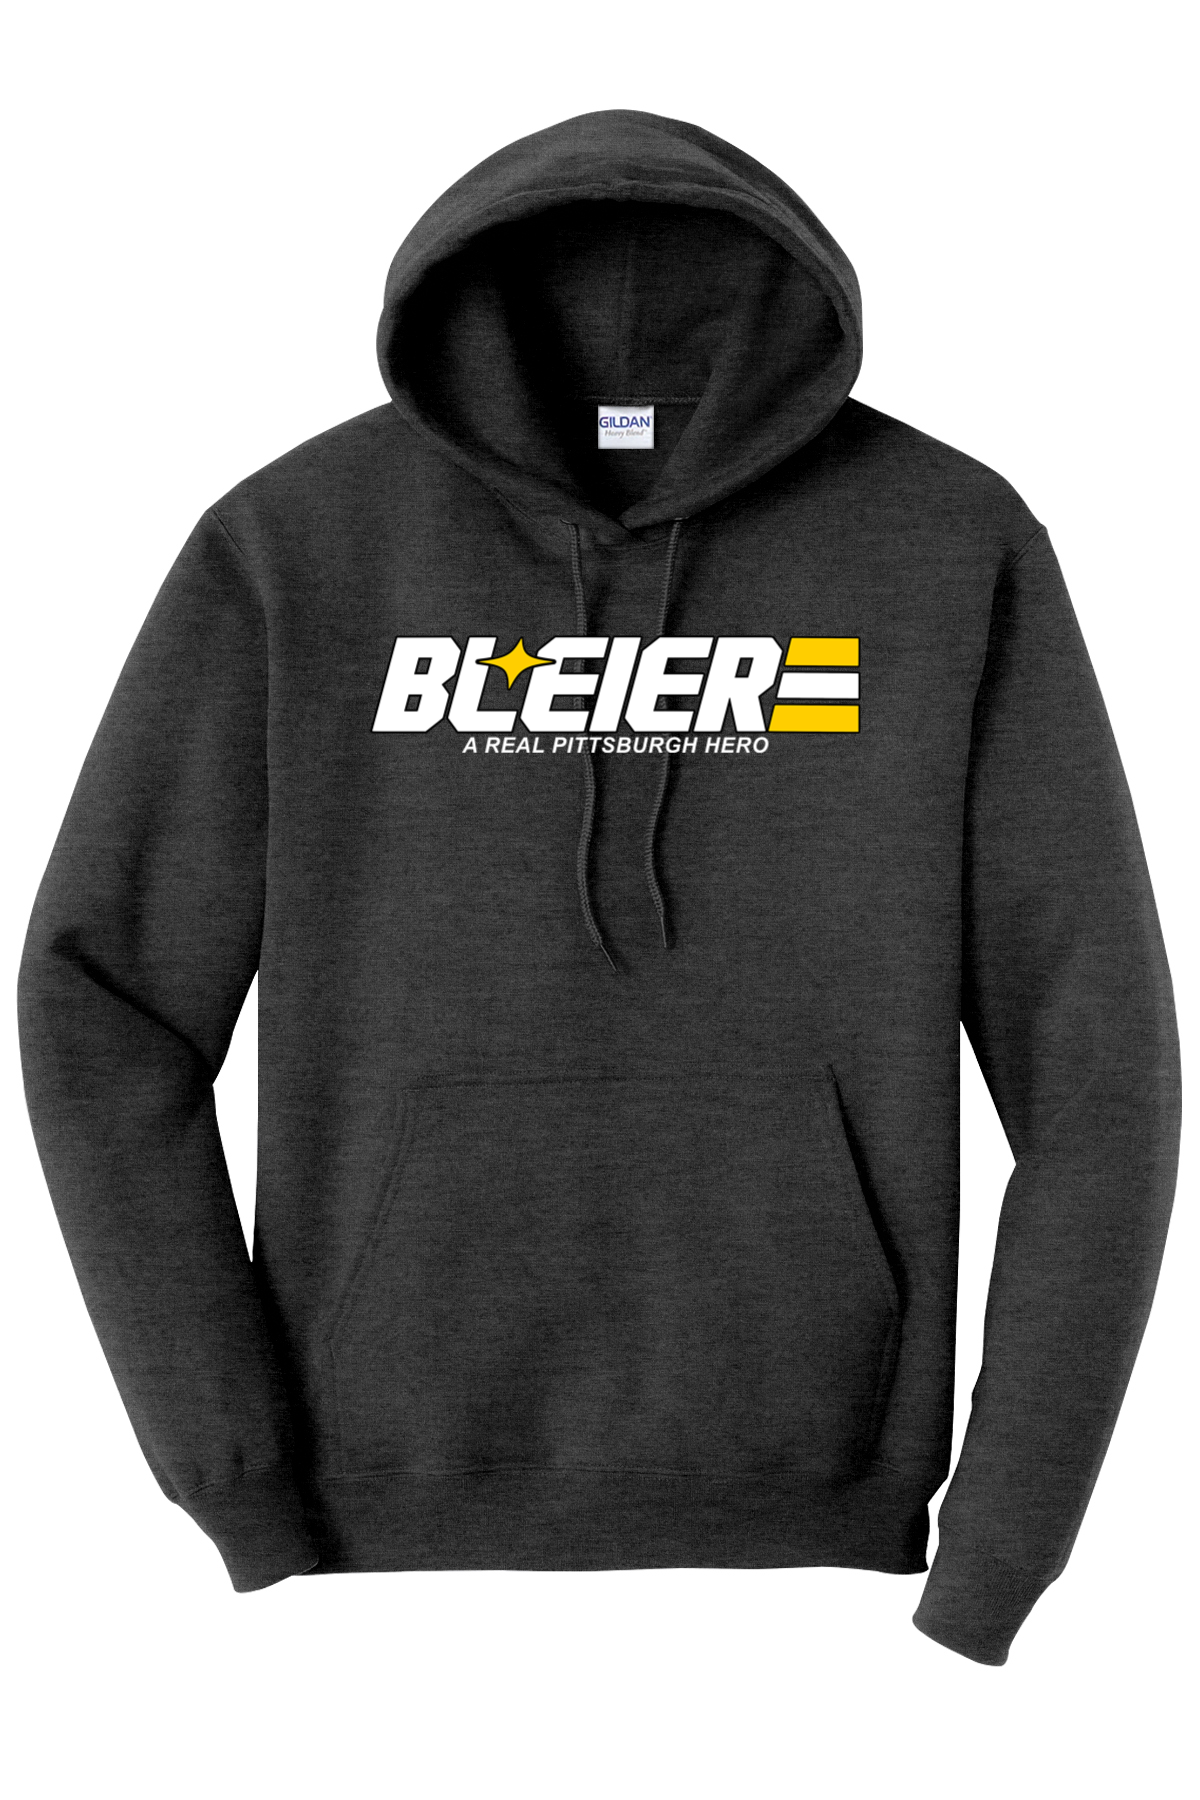 Bleier - A Real Pittsburgh Hero - Hoodie - Yinzylvania